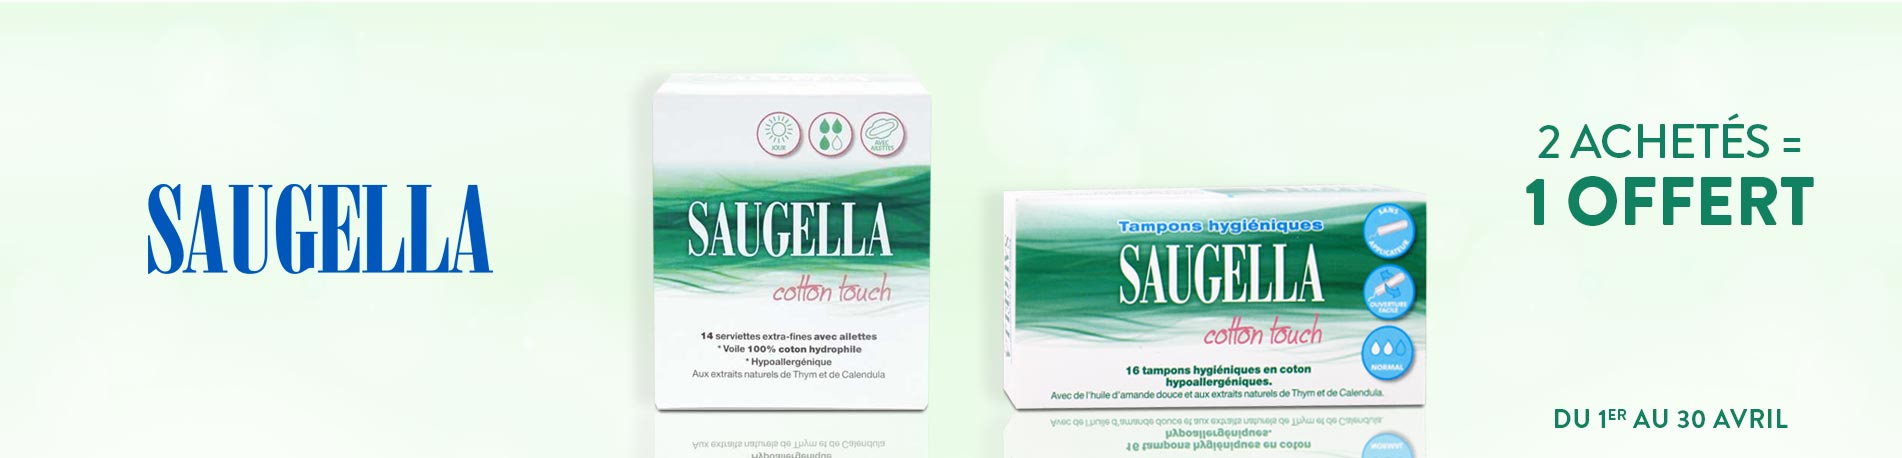 Promotion Saugella Cotton touch